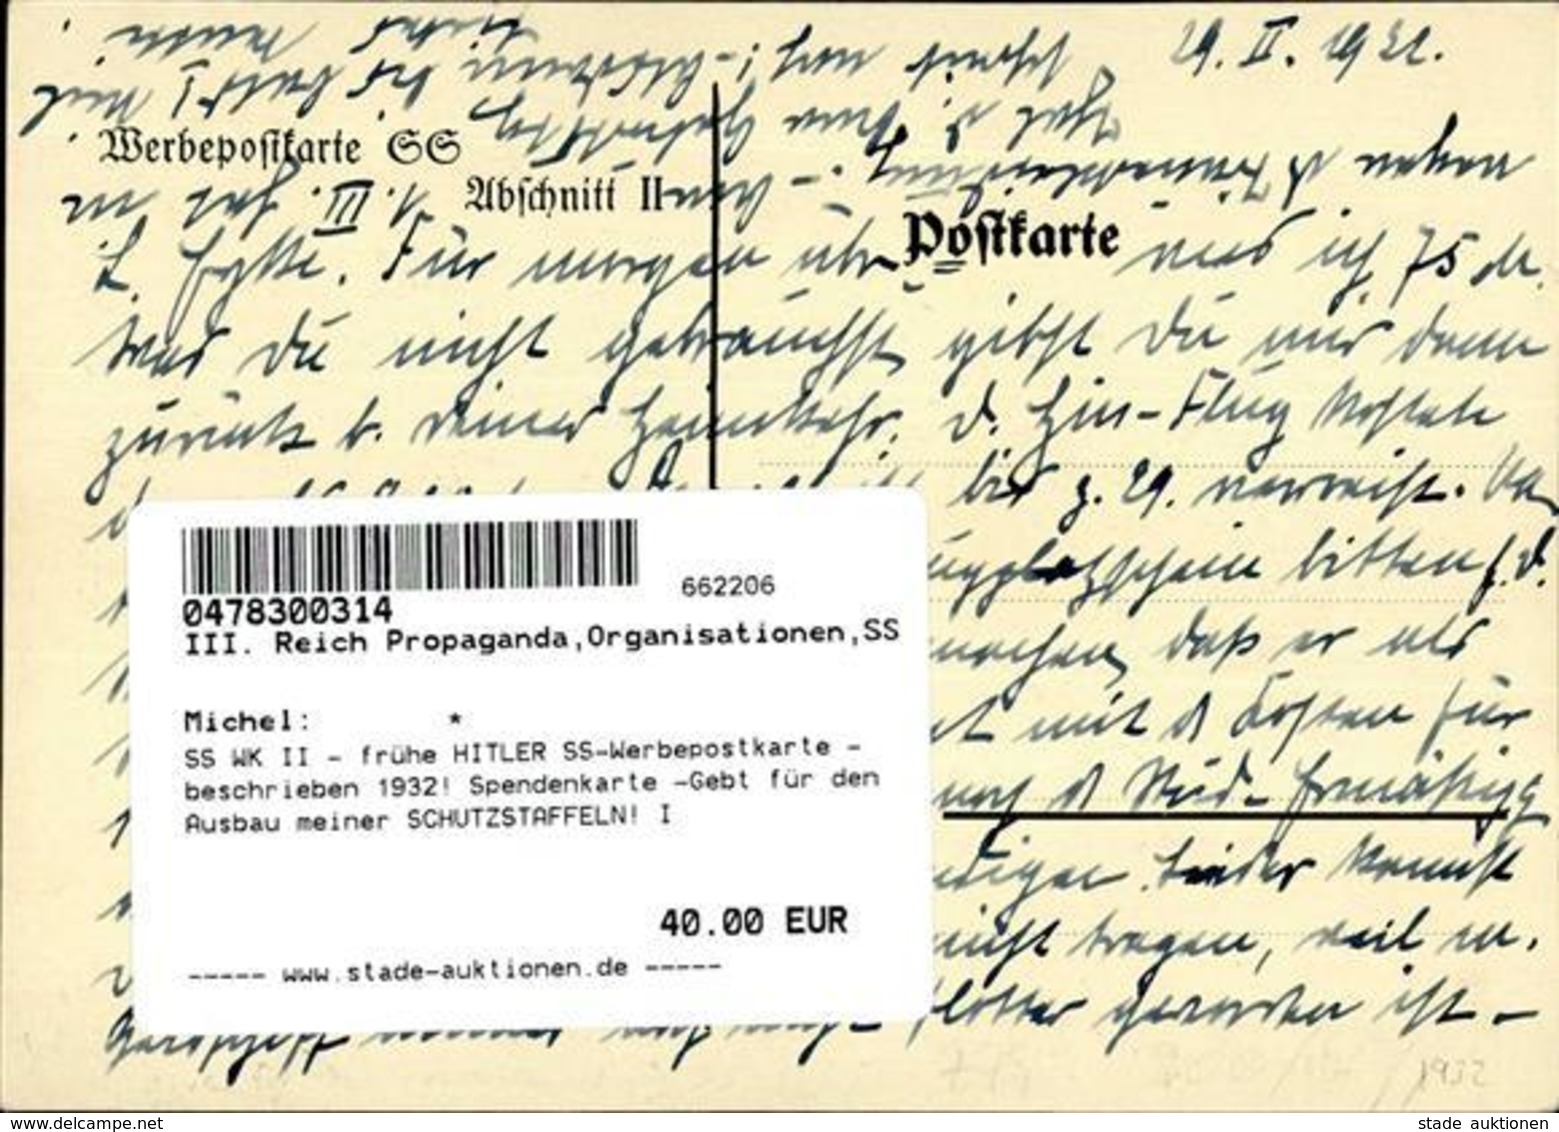 SS WK II - Frühe HITLER SS-Werbepostkarte - Beschrieben 1932! Spendenkarte -Gebt Für Den Ausbau Meiner SCHUTZSTAFFELN! I - Guerre 1939-45